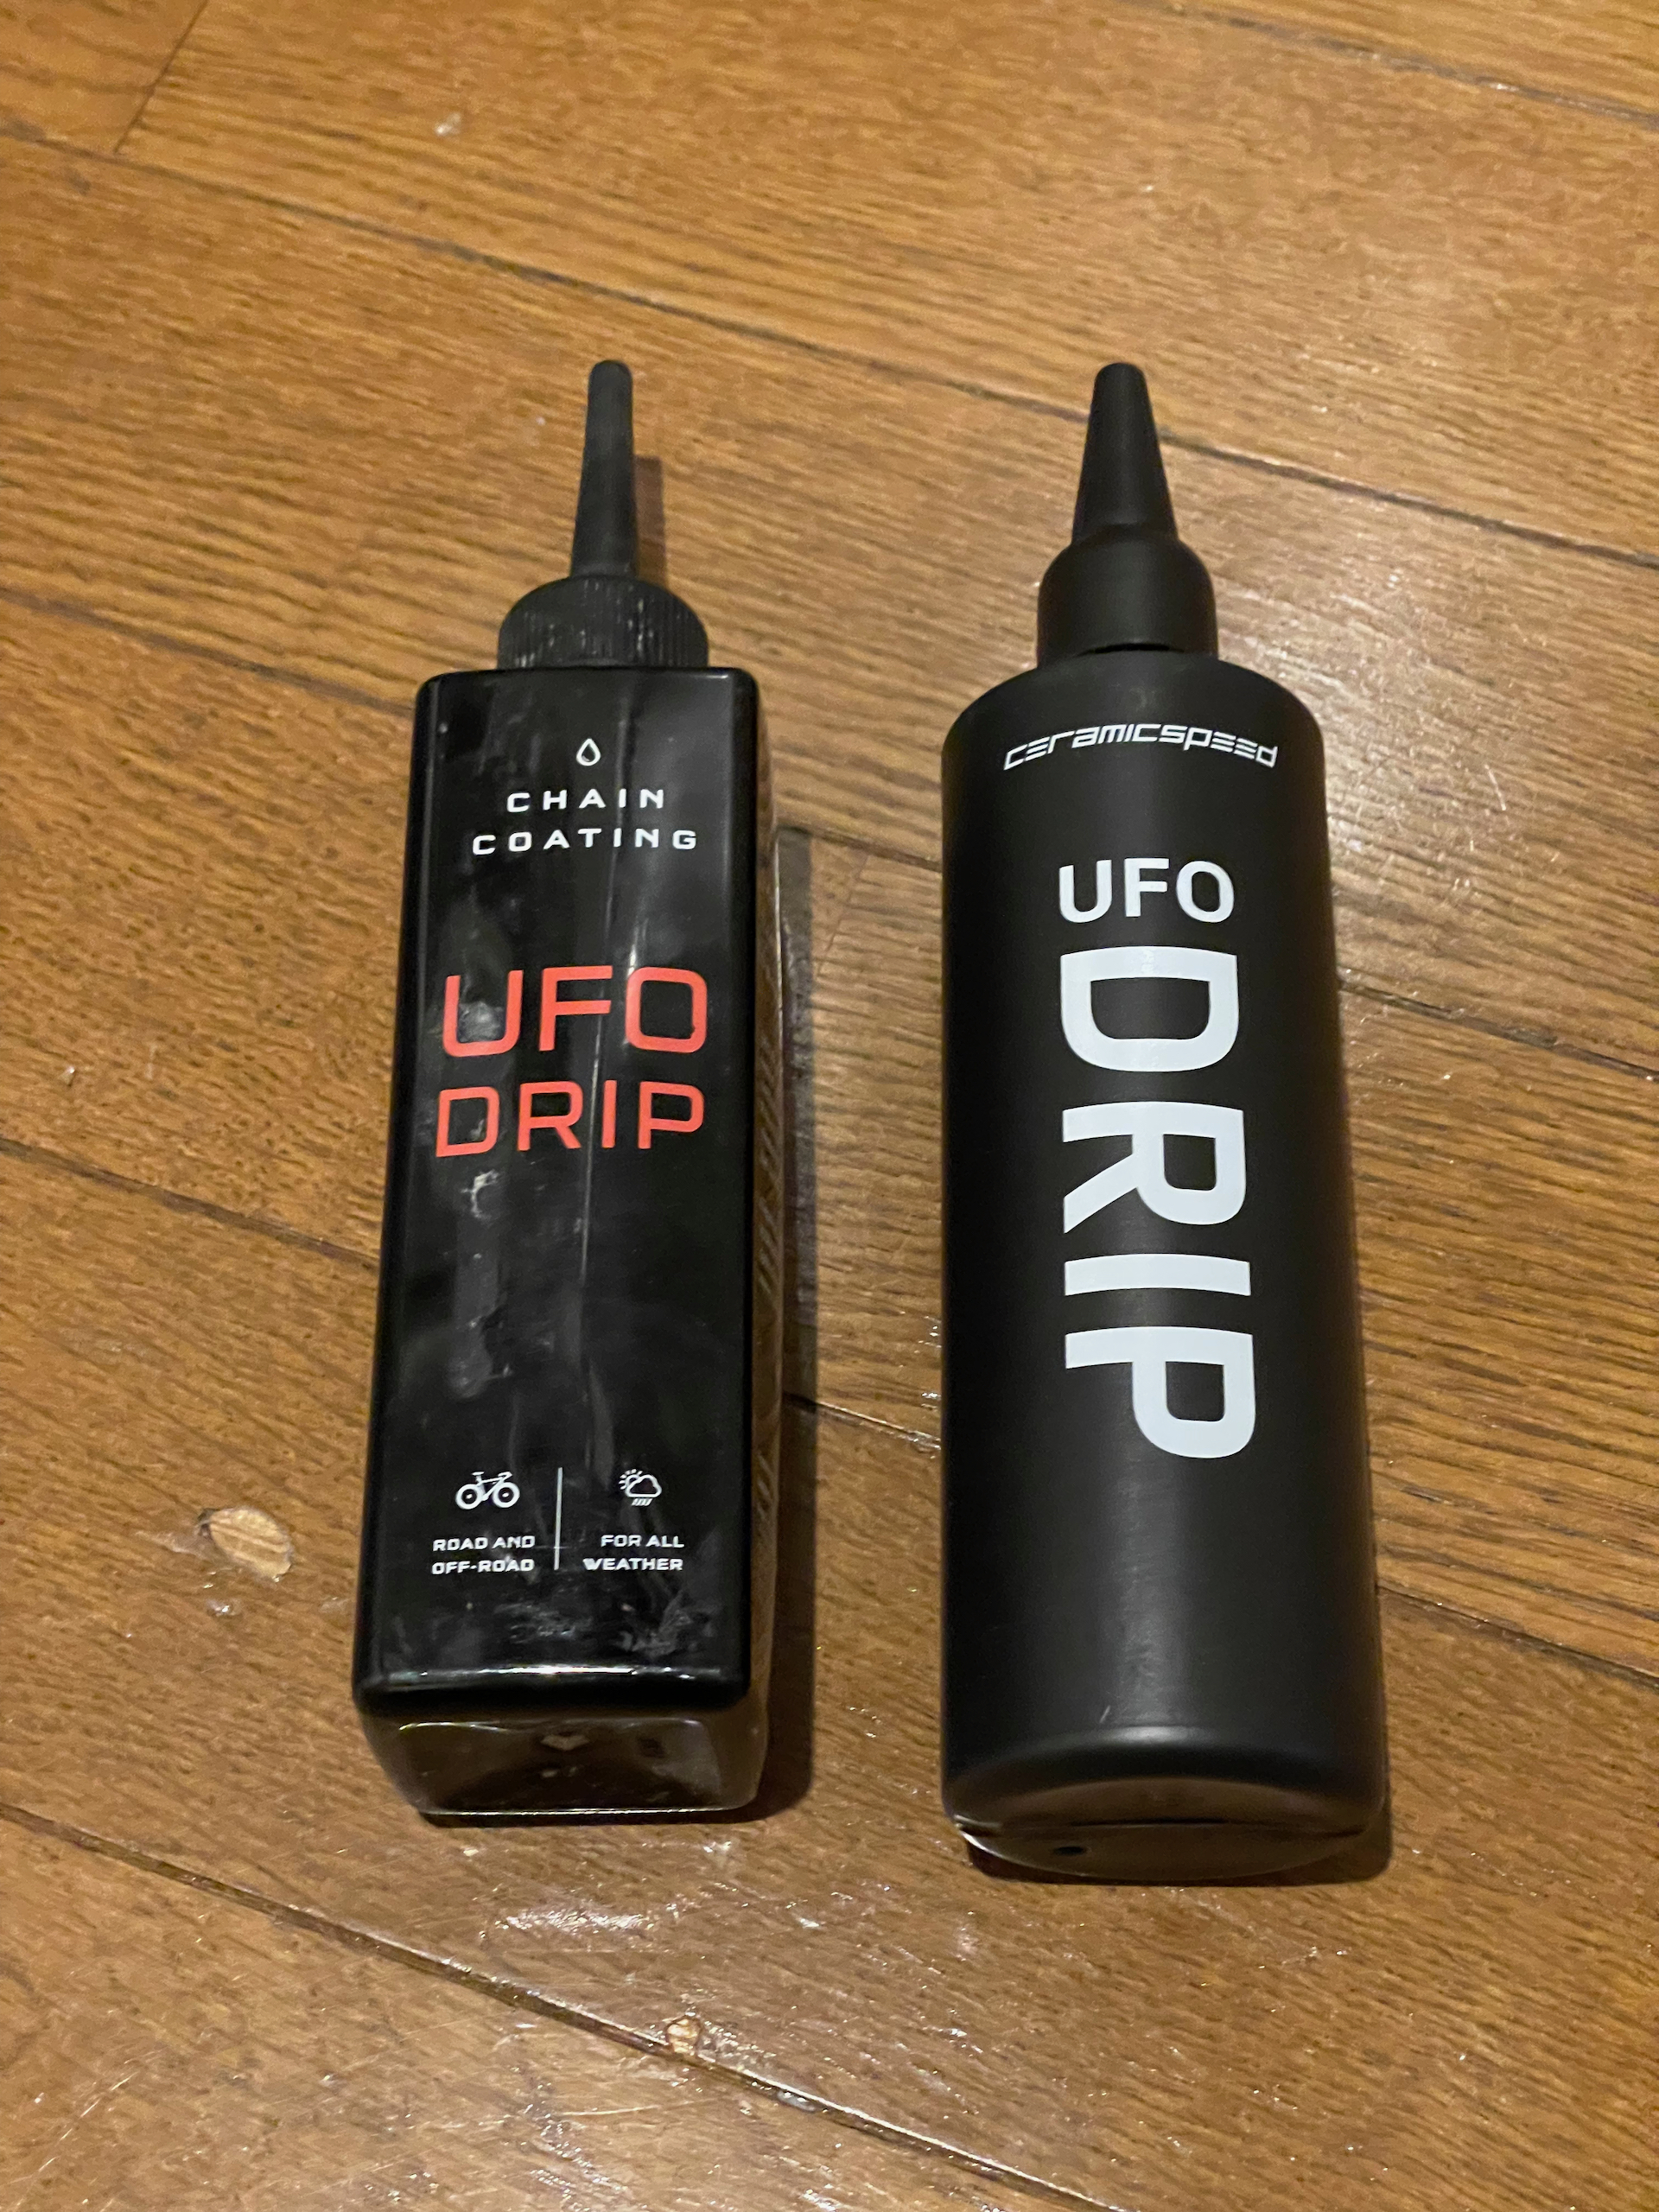 旧UFO DRIPと比較